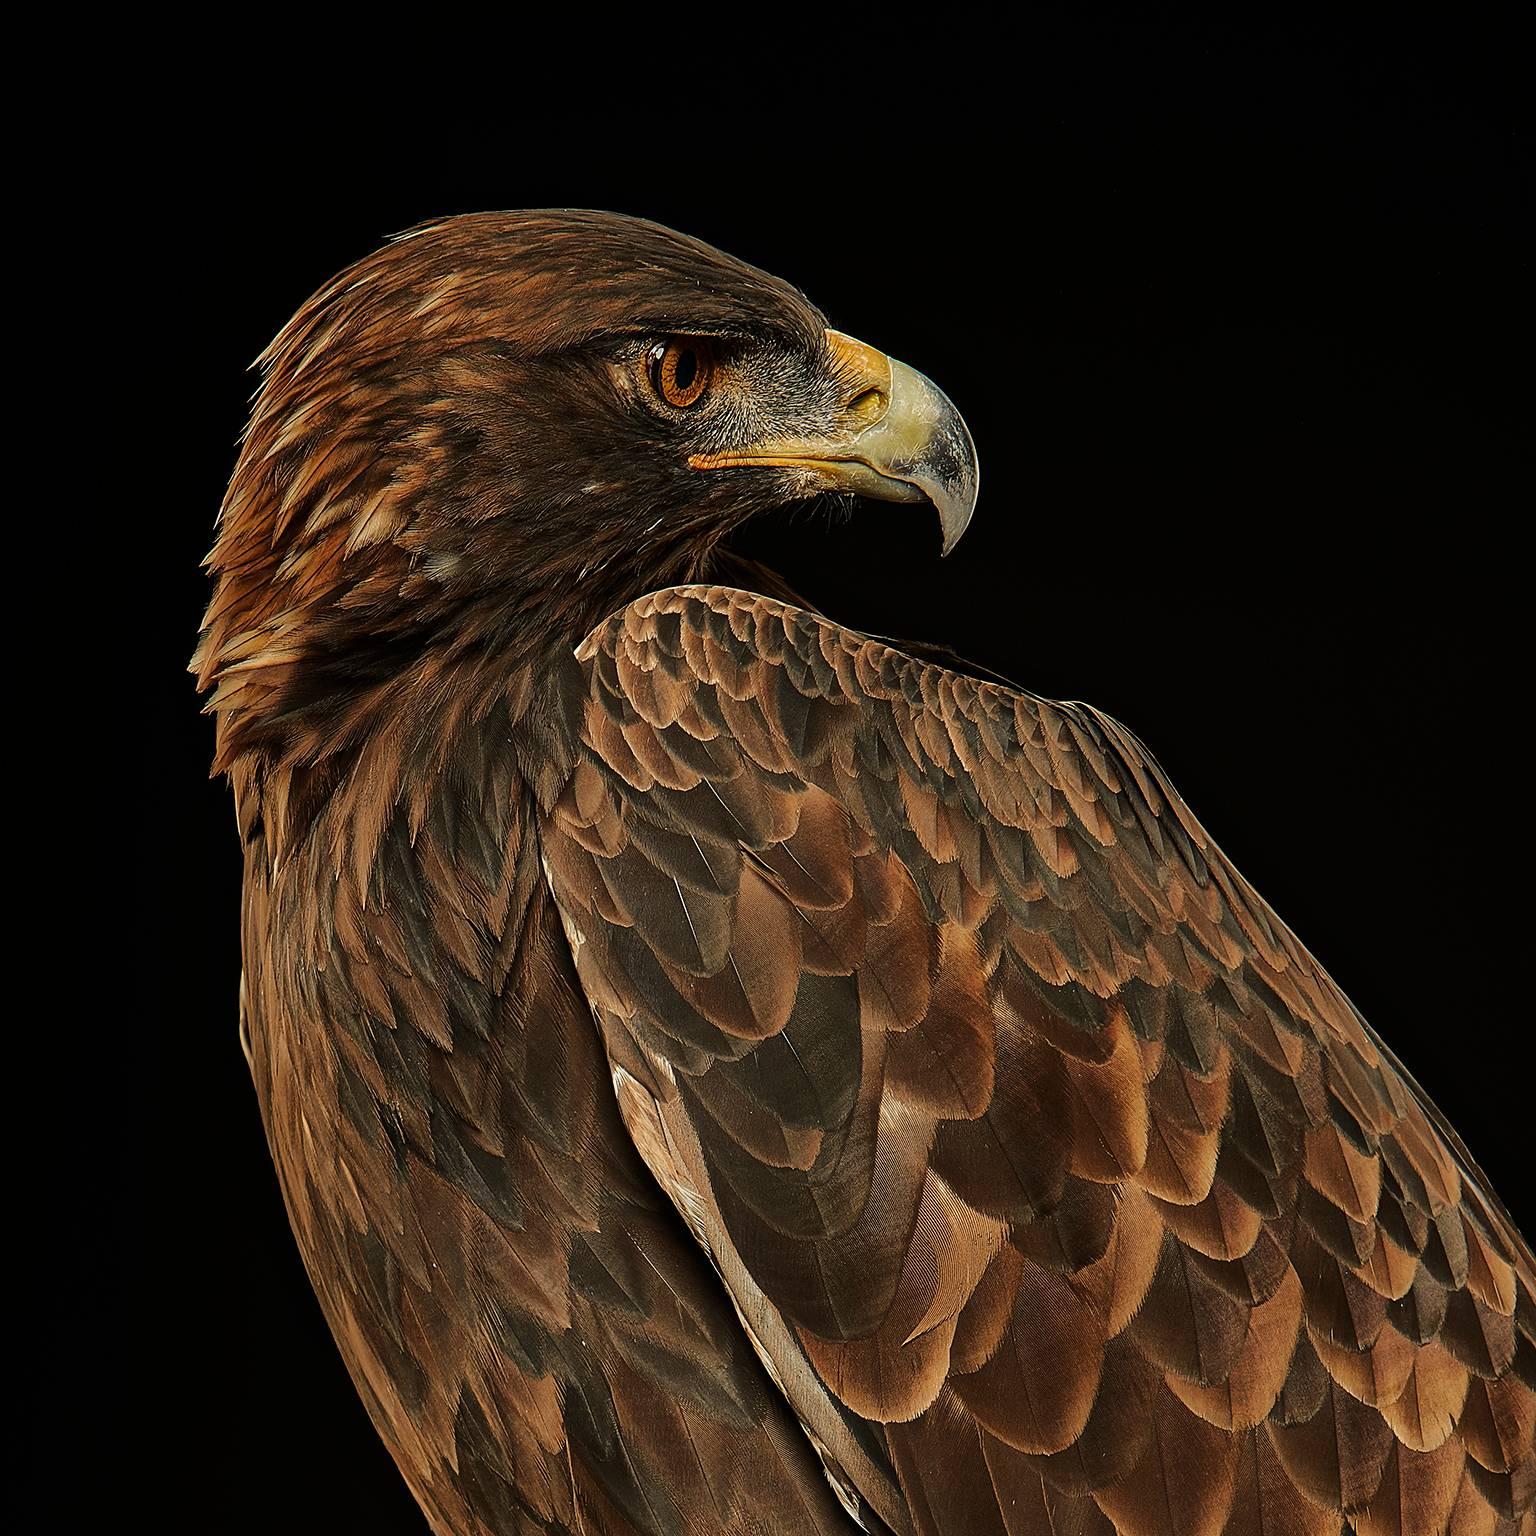 Birds of Prey Golden Eagle No. 22 - Photograph by Chris Gordaneer